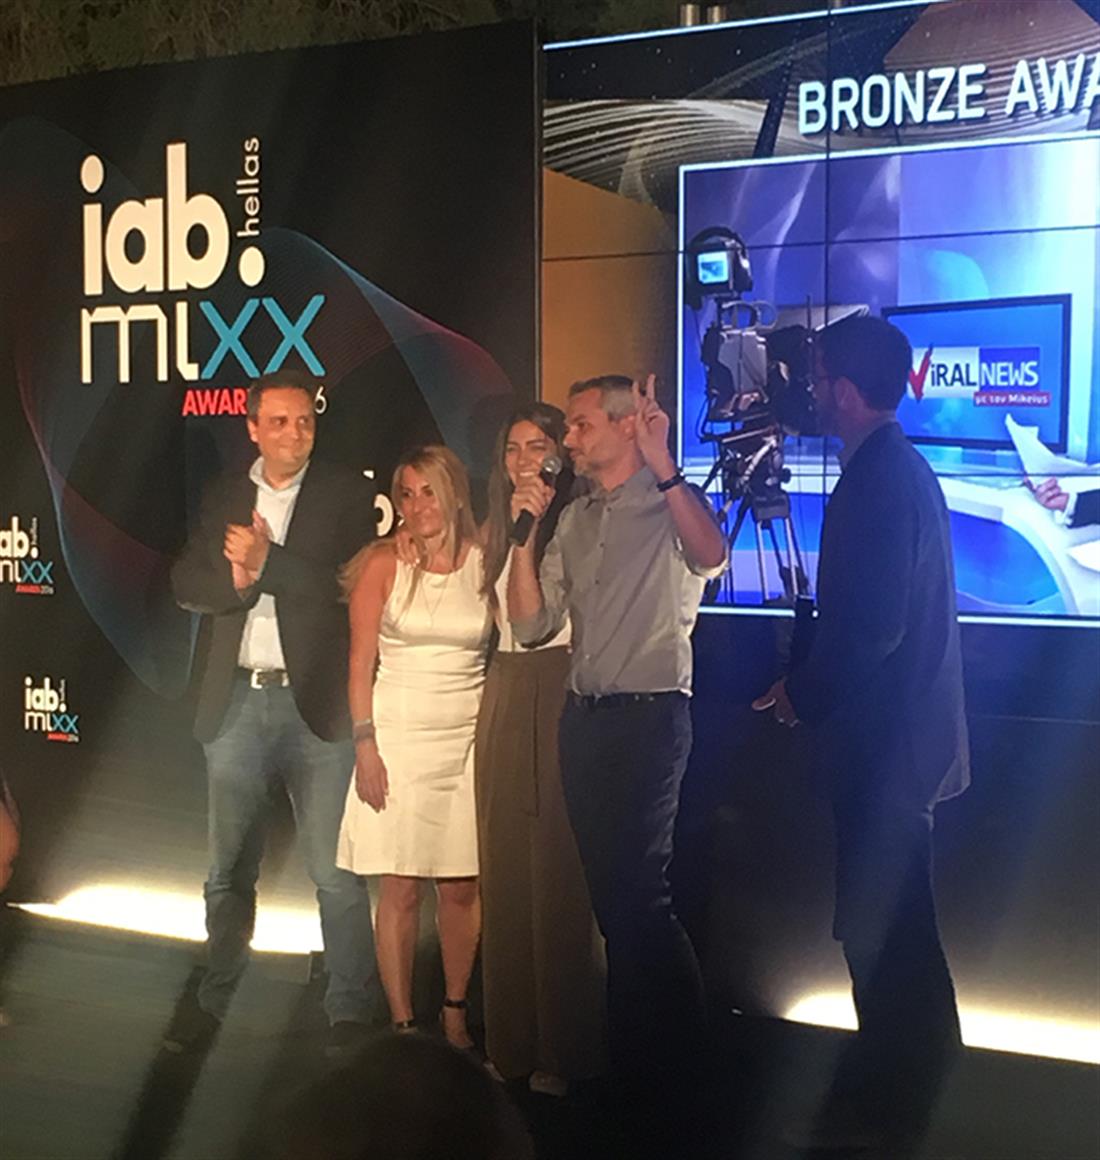 Iab mixx awards 2016 - ΑΝΤ1